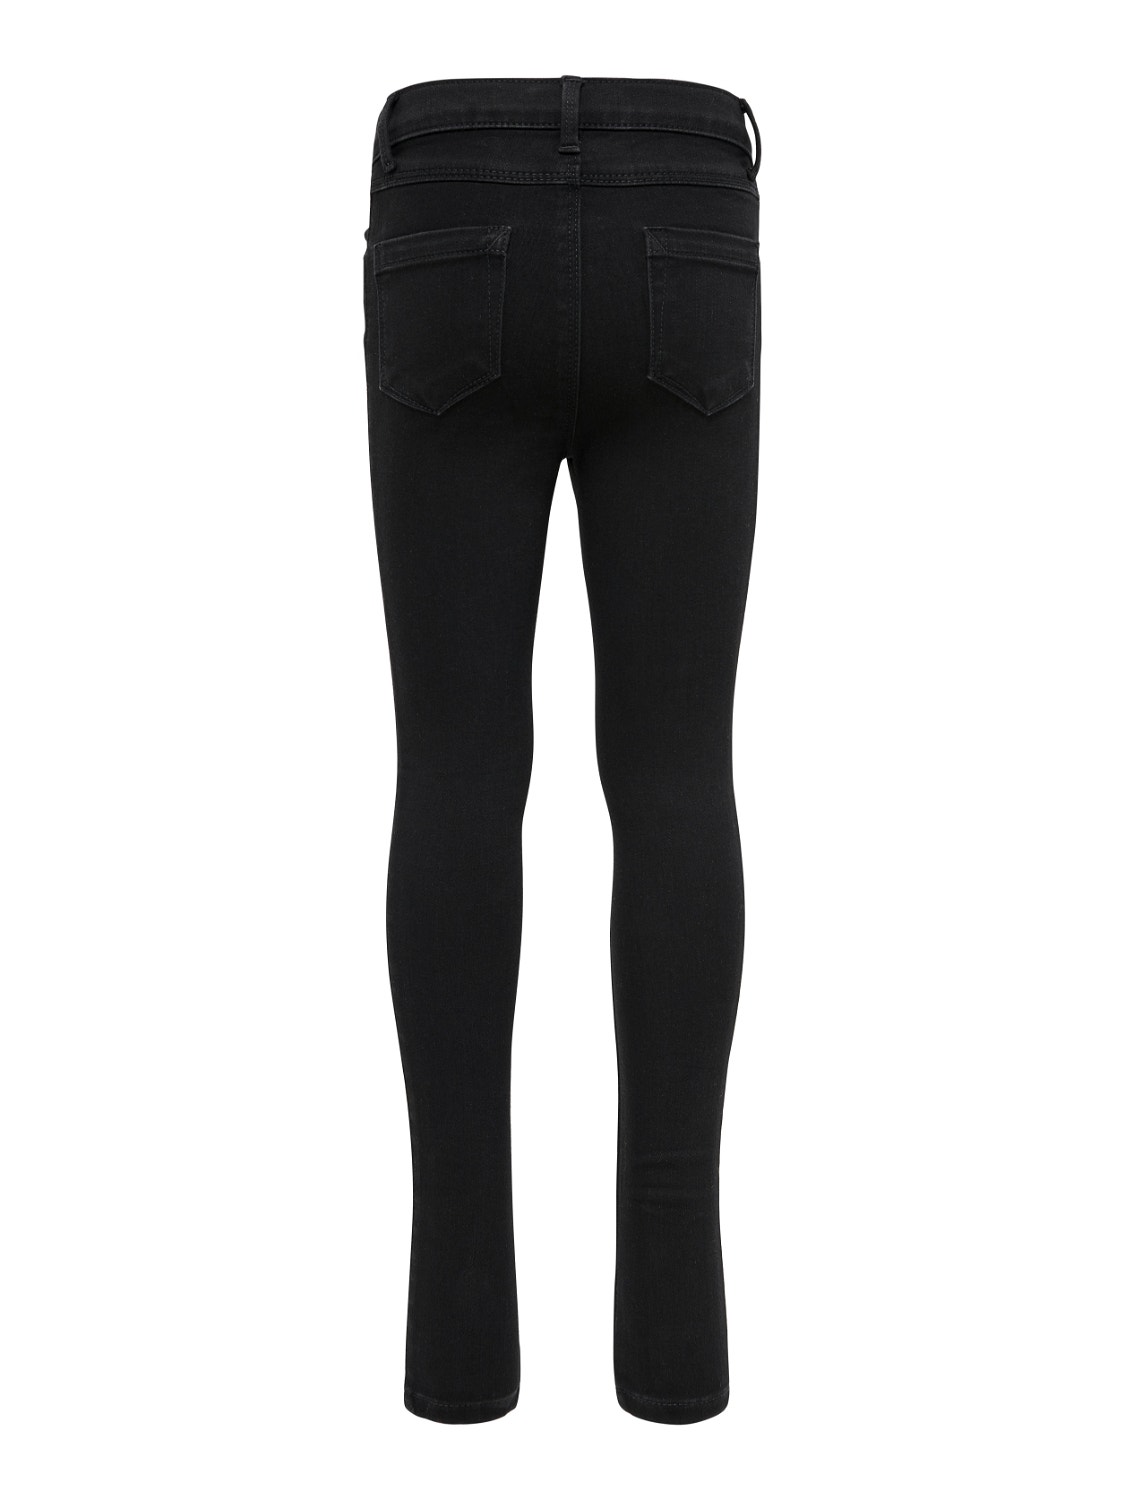 ONLY Jeans Skinny Fit -Black Denim - 15187070